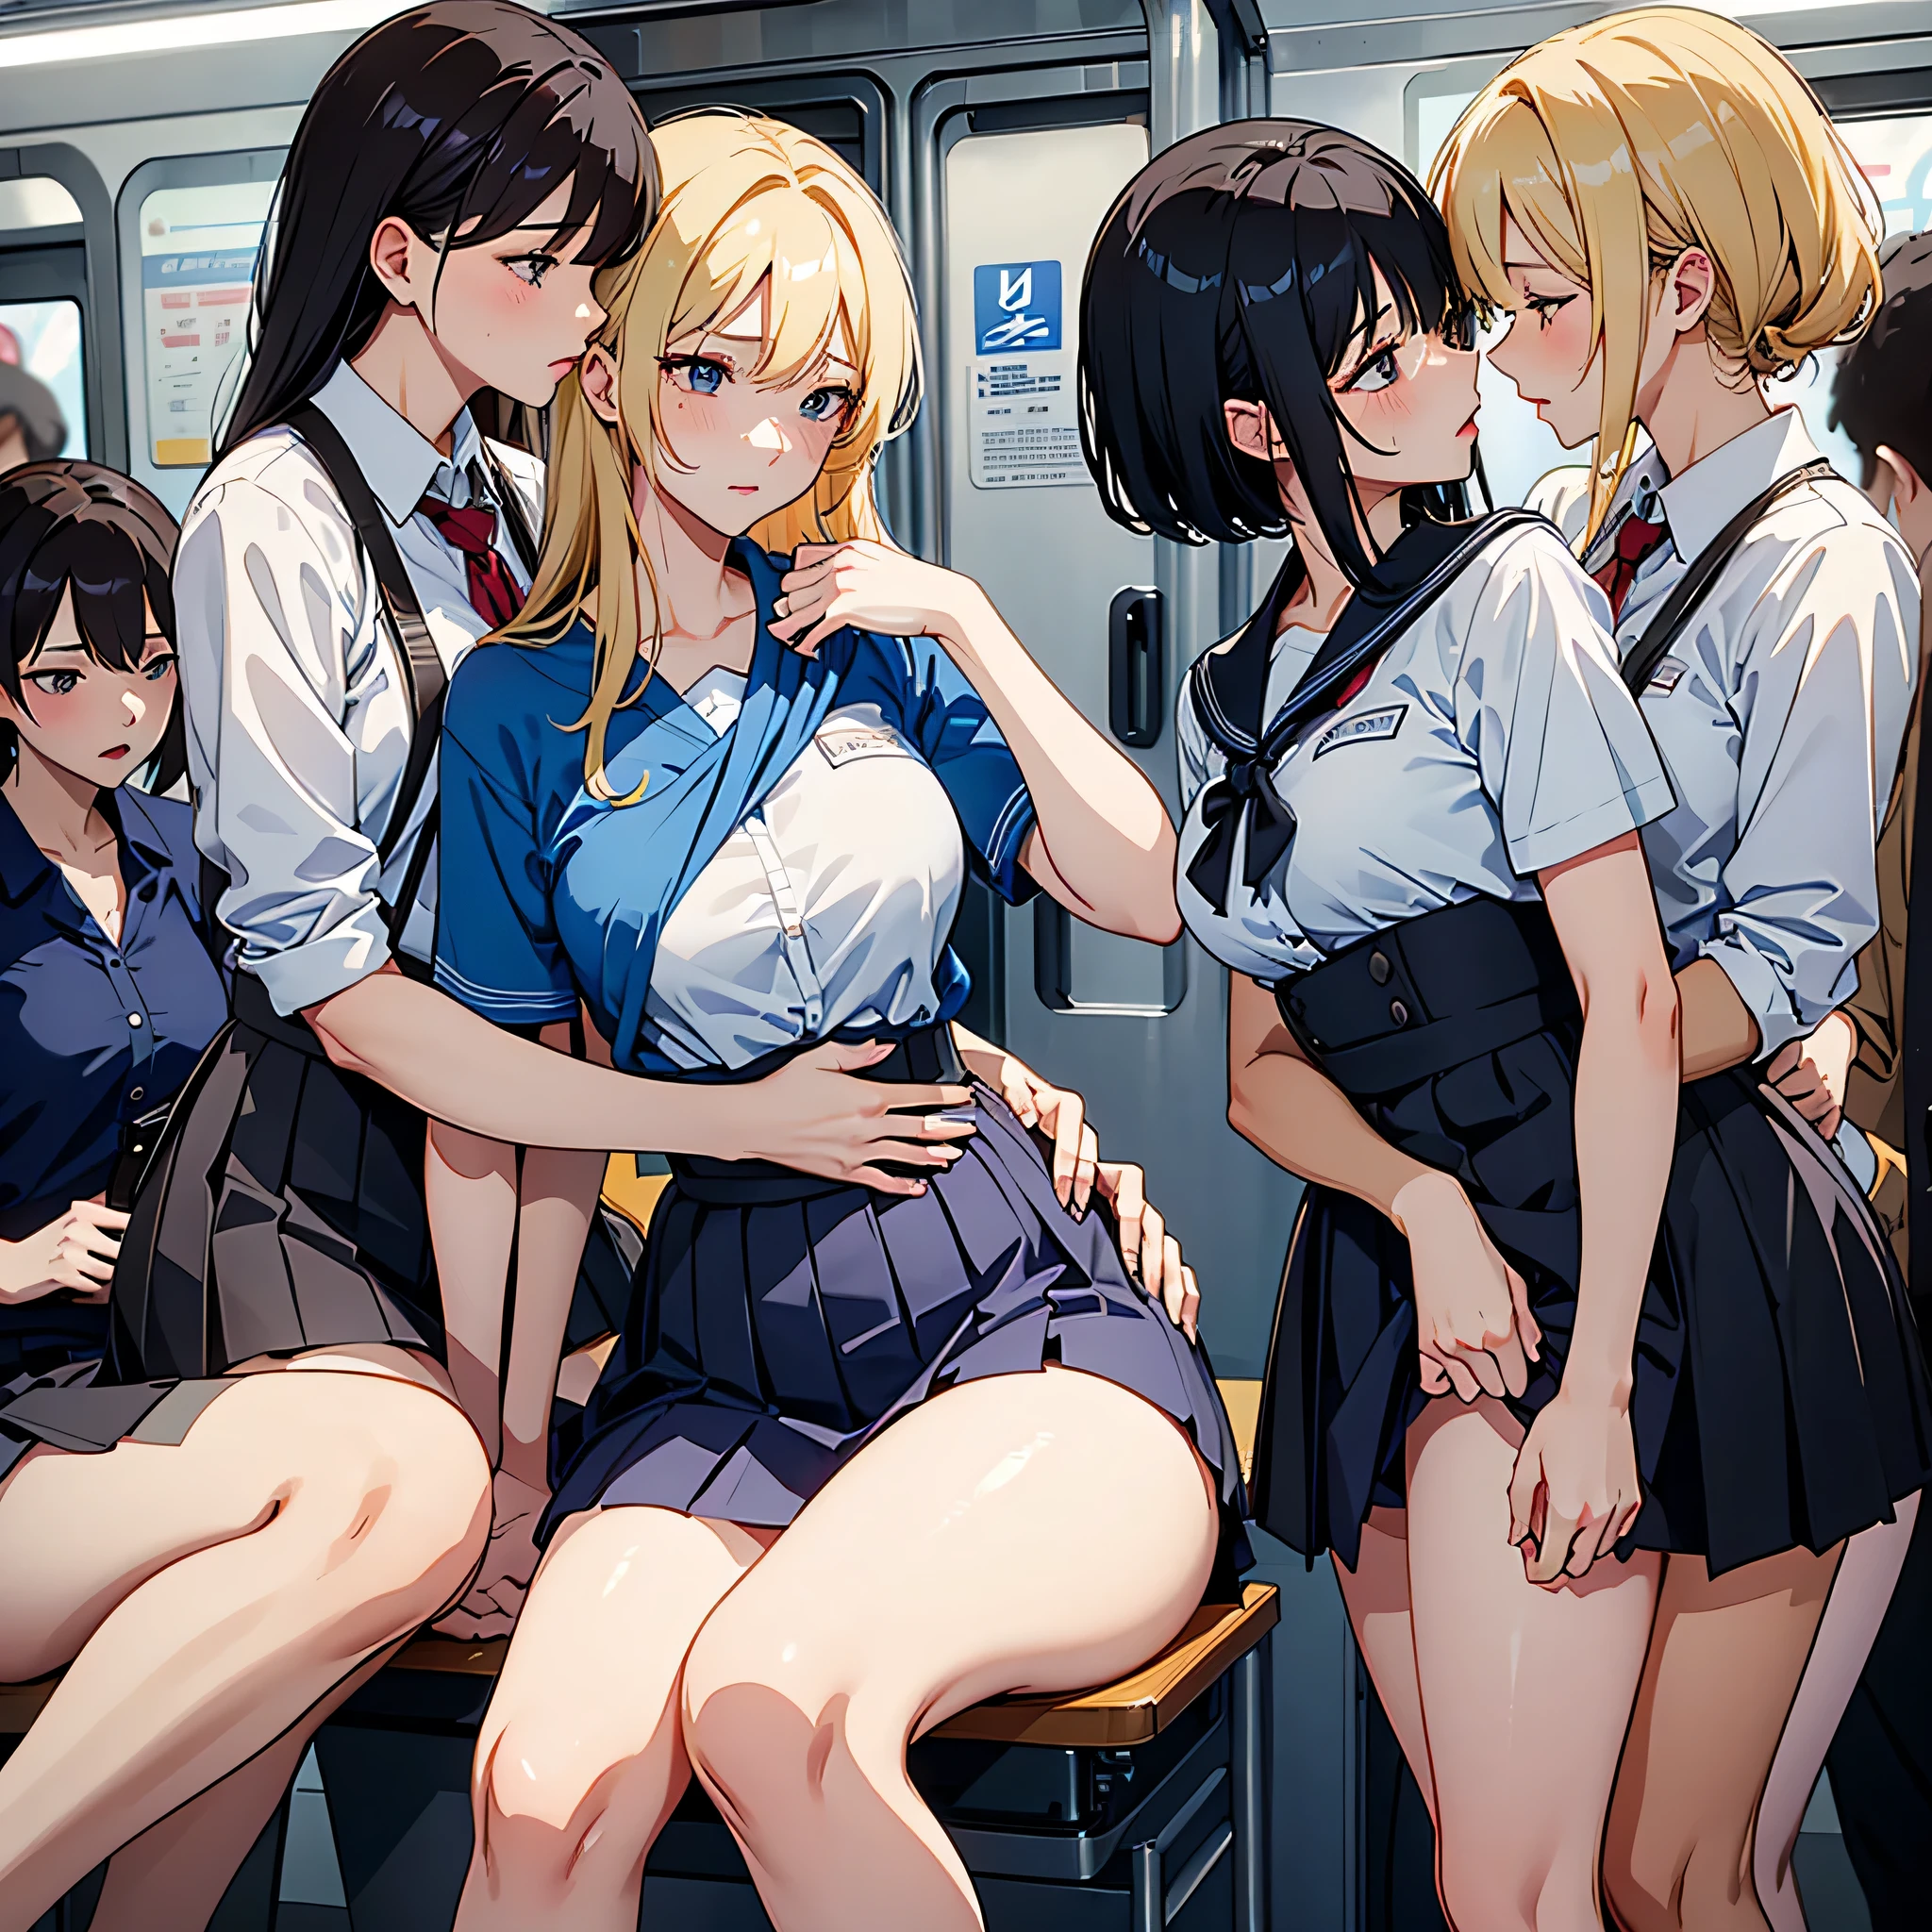 不适合上班时间, 真实感, 顶级品质, 杰作, 4名韩国女性 , 仅限韩国女性, 绝对不能是男性, 绝对没有男人, 非常拥挤的女性专用地铁列车内部详细场景, VERY crowded 仅限韩国女性 subway train interior detailed background, st和ing insanely hot (女人 1) 使用性感 ((校服)), (((裙子被掀起来)), (大腿粗壮), (恐惧表情), 脸红, (女人2) 性感的年轻, 金发, 困惑的表情, mature woman ass groping 女人 1 from behind, 女人2 touches 女人 1 vagina, young 女人2 caressing 女人 1 legs, 湿吻, 女同接吻,  (((mature woman pressing her chest on 女人 1 back))) 和 (((双手抱住身后的腰)))